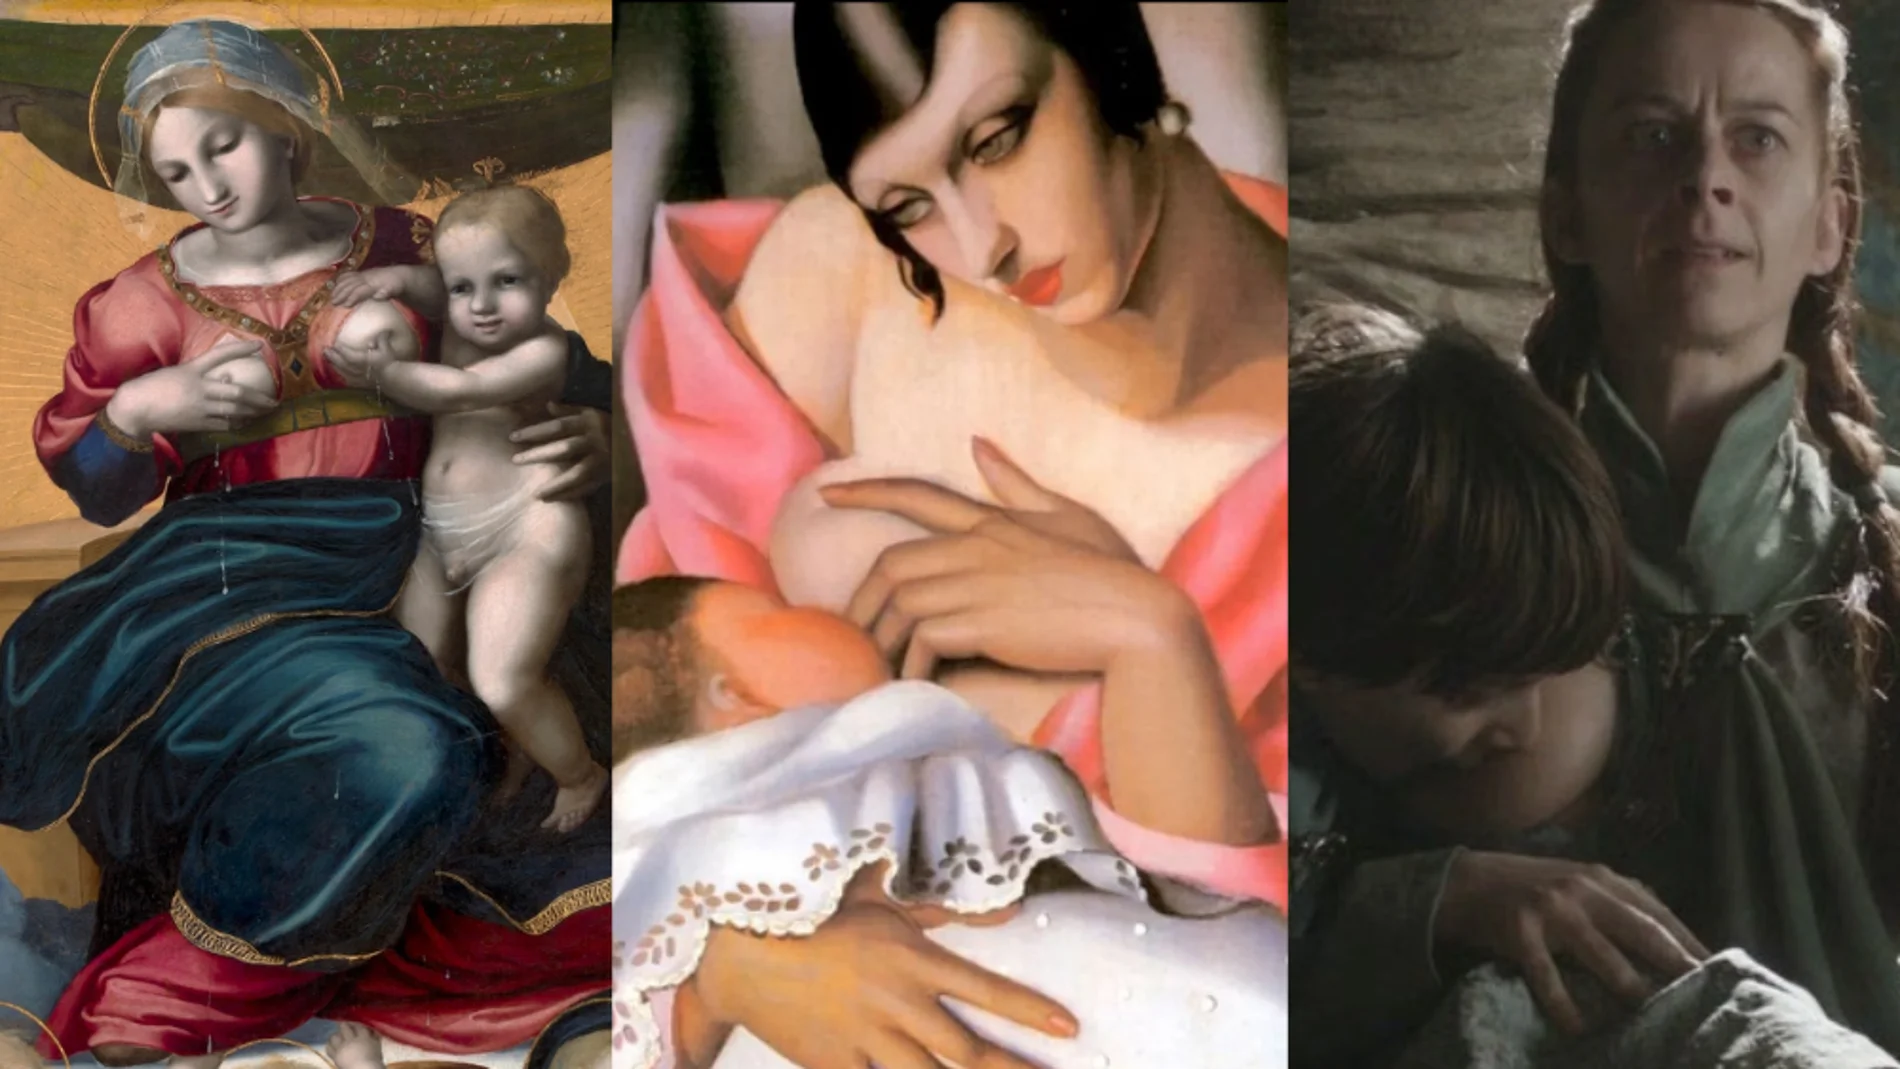 Pintura, cine, series, fotografía...: el mundo de la cultura se rinde ante la lactancia materna